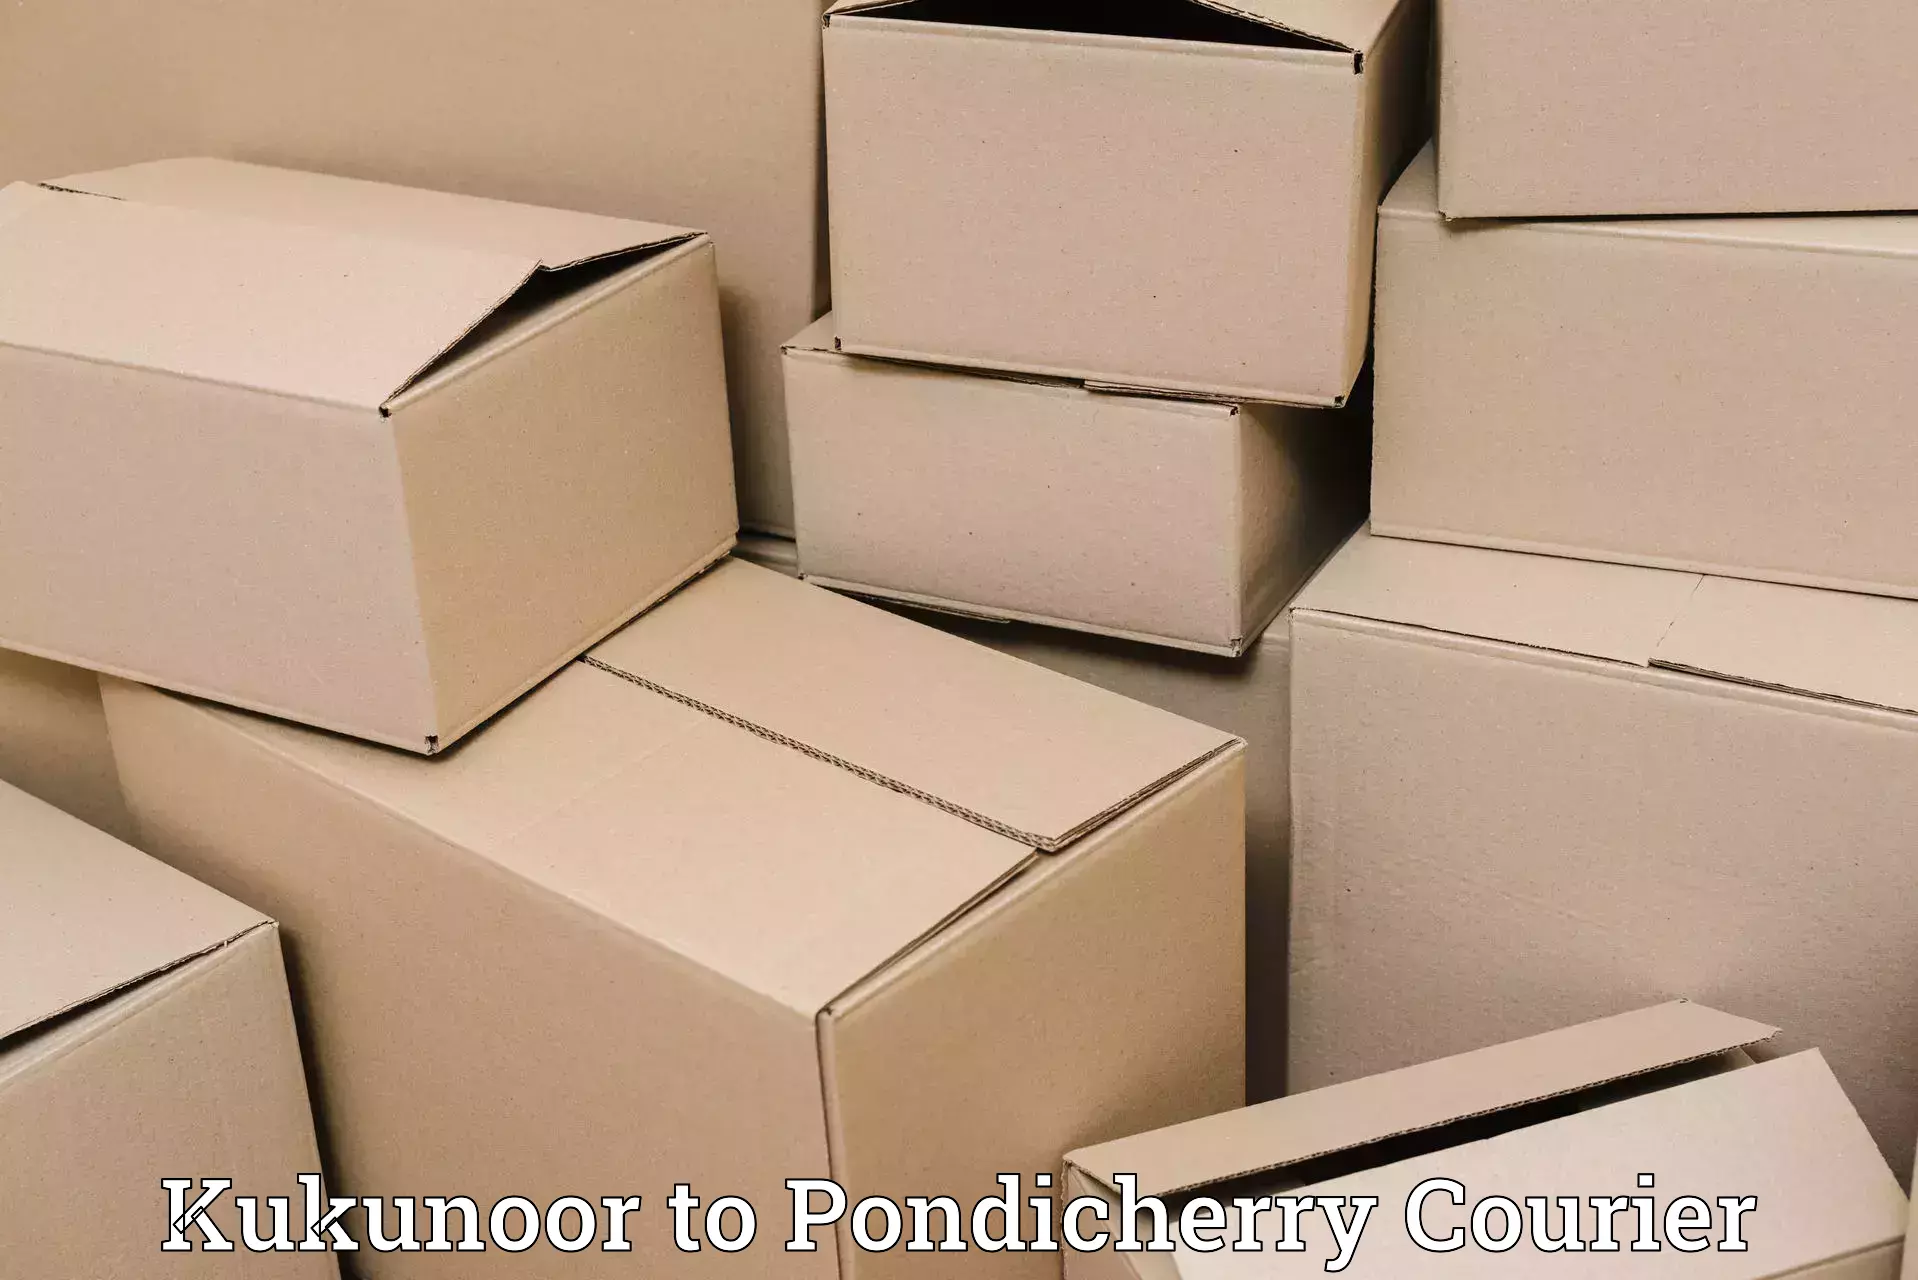 Cost-effective courier solutions Kukunoor to Pondicherry